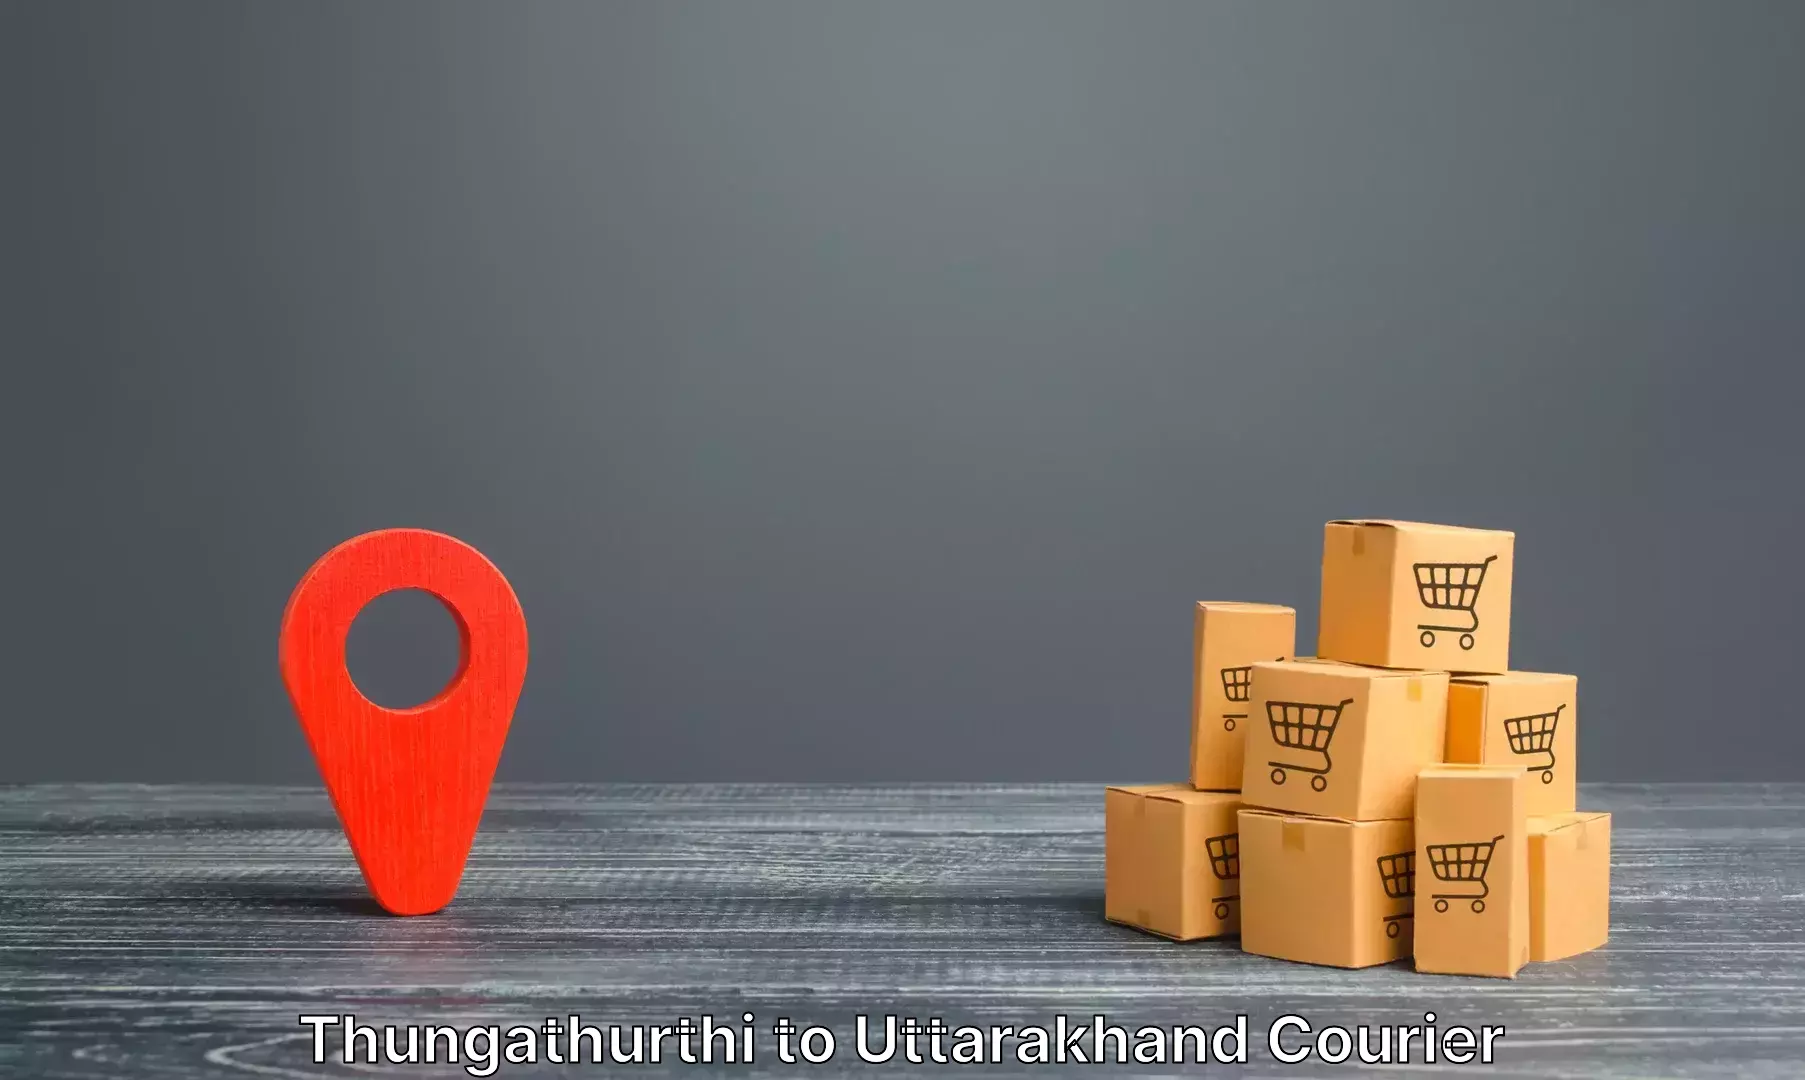 Excess baggage transport Thungathurthi to Uttarakhand